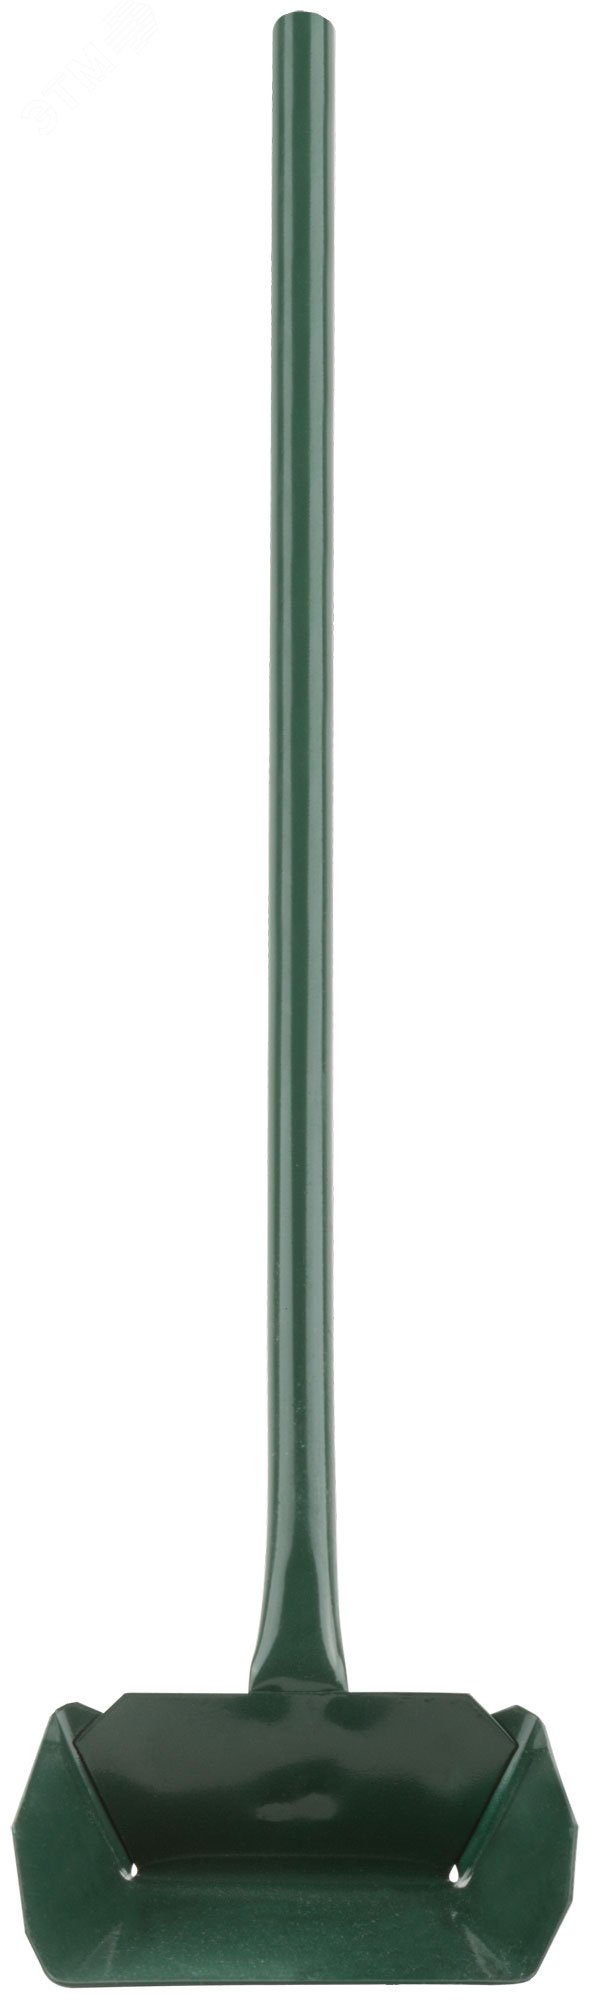 Совок зольный металлический, длинная ручка 610 мм 68089 КУРС РОС - превью 3